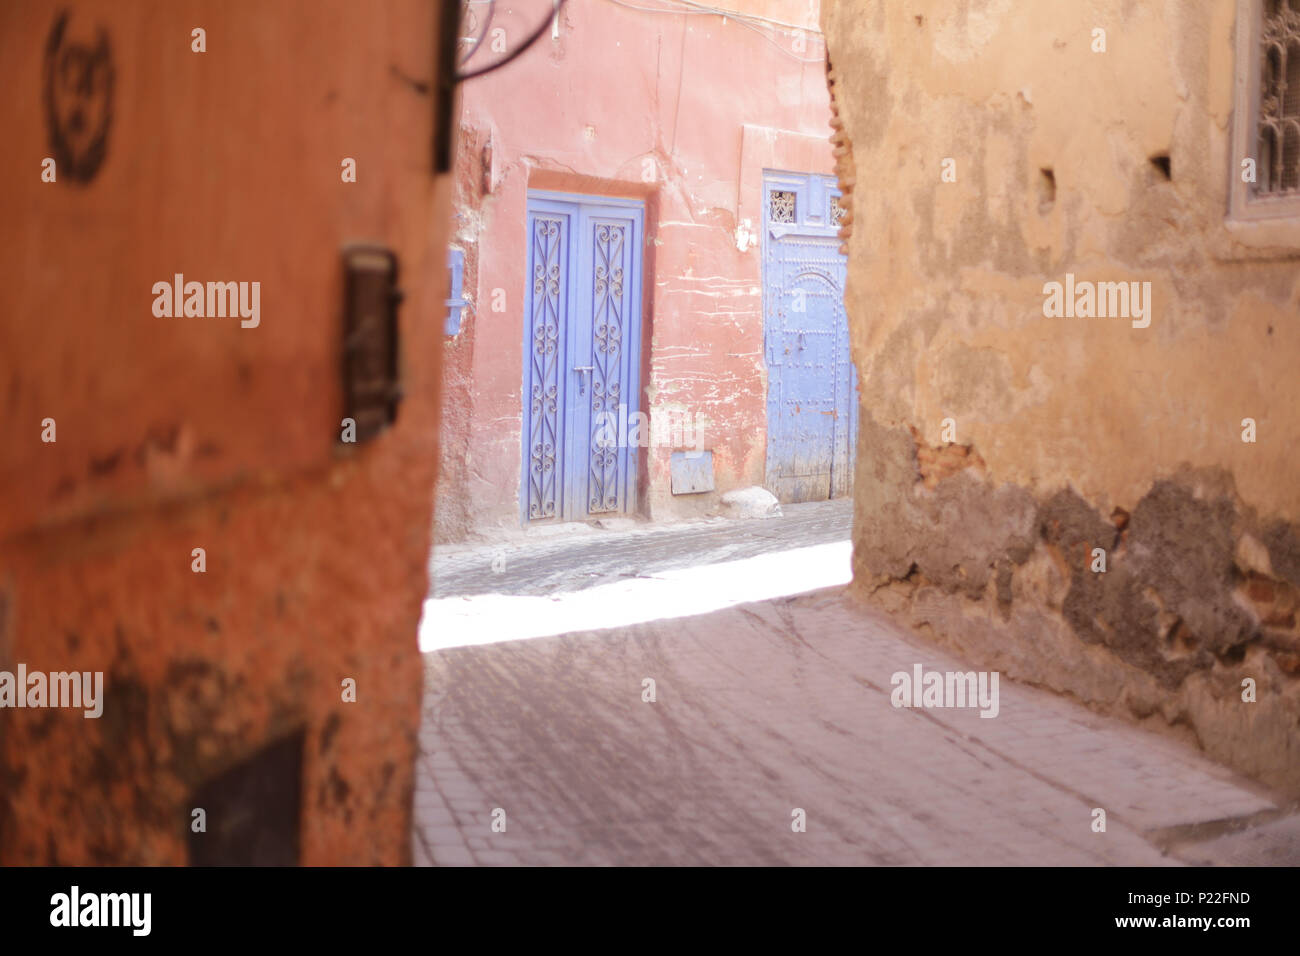 Morocco, Marrakech, street scene, side street Stock Photo